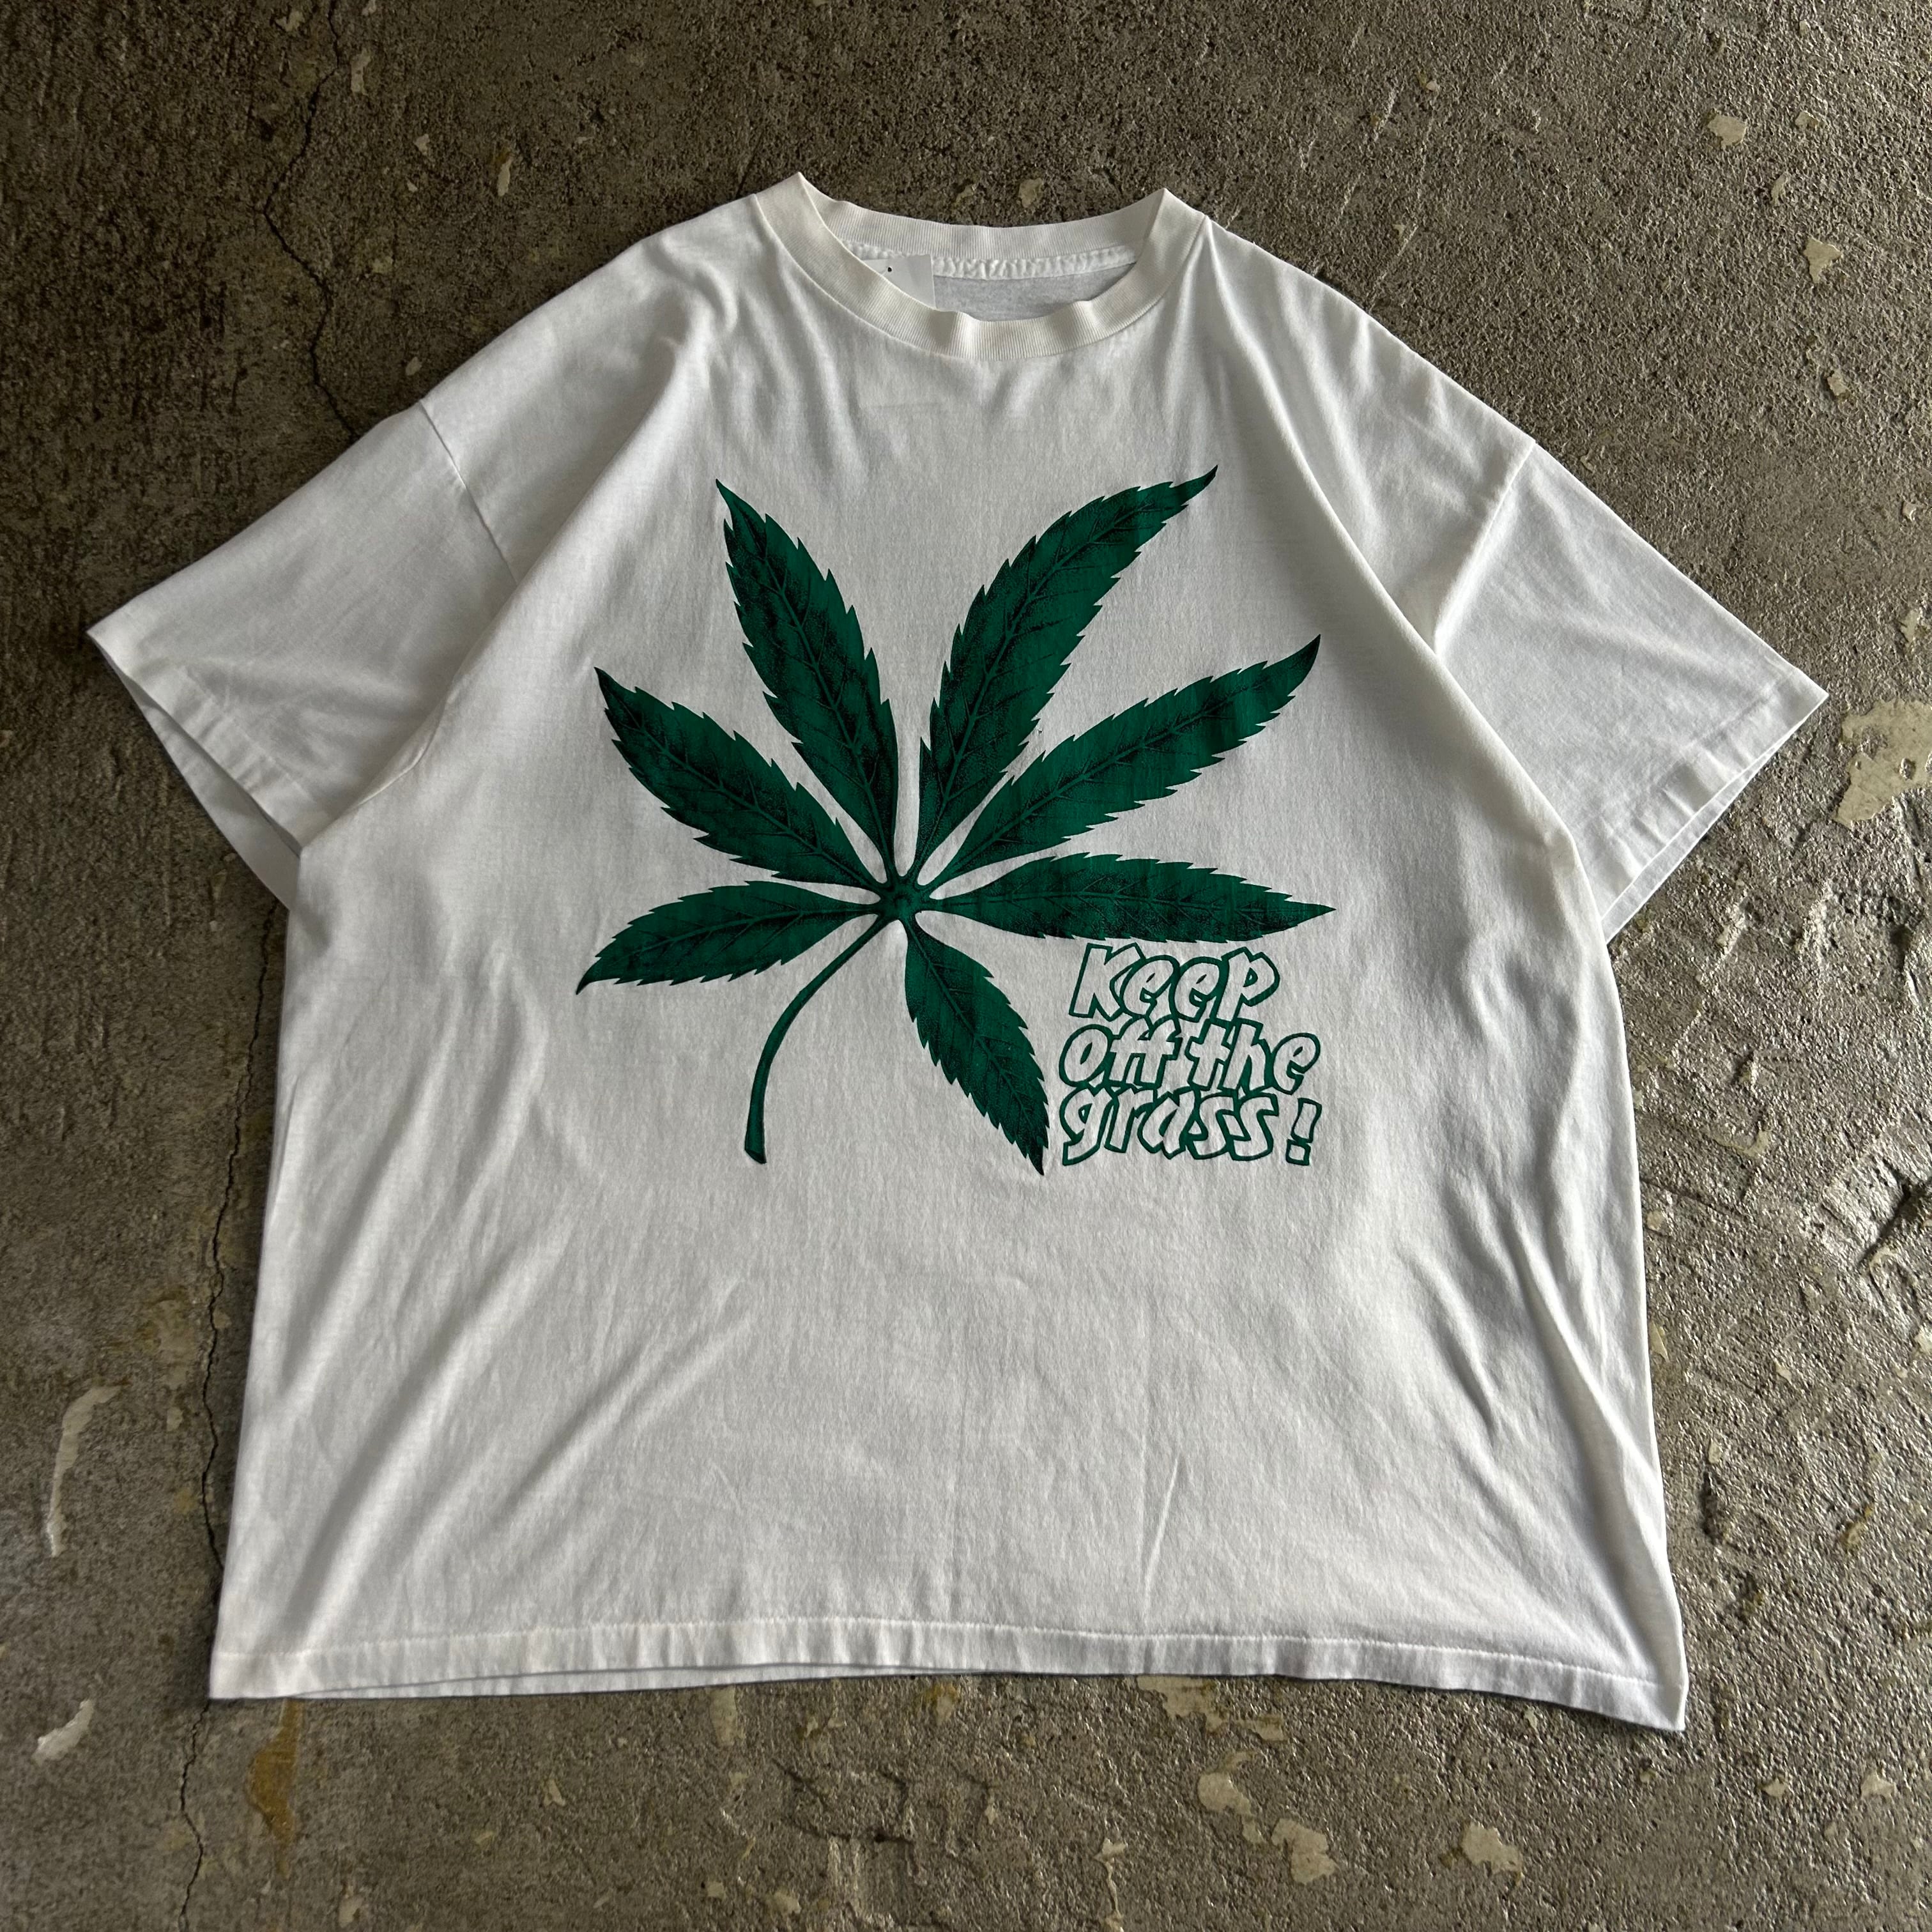 【sicko】 marijuana Tシャツ